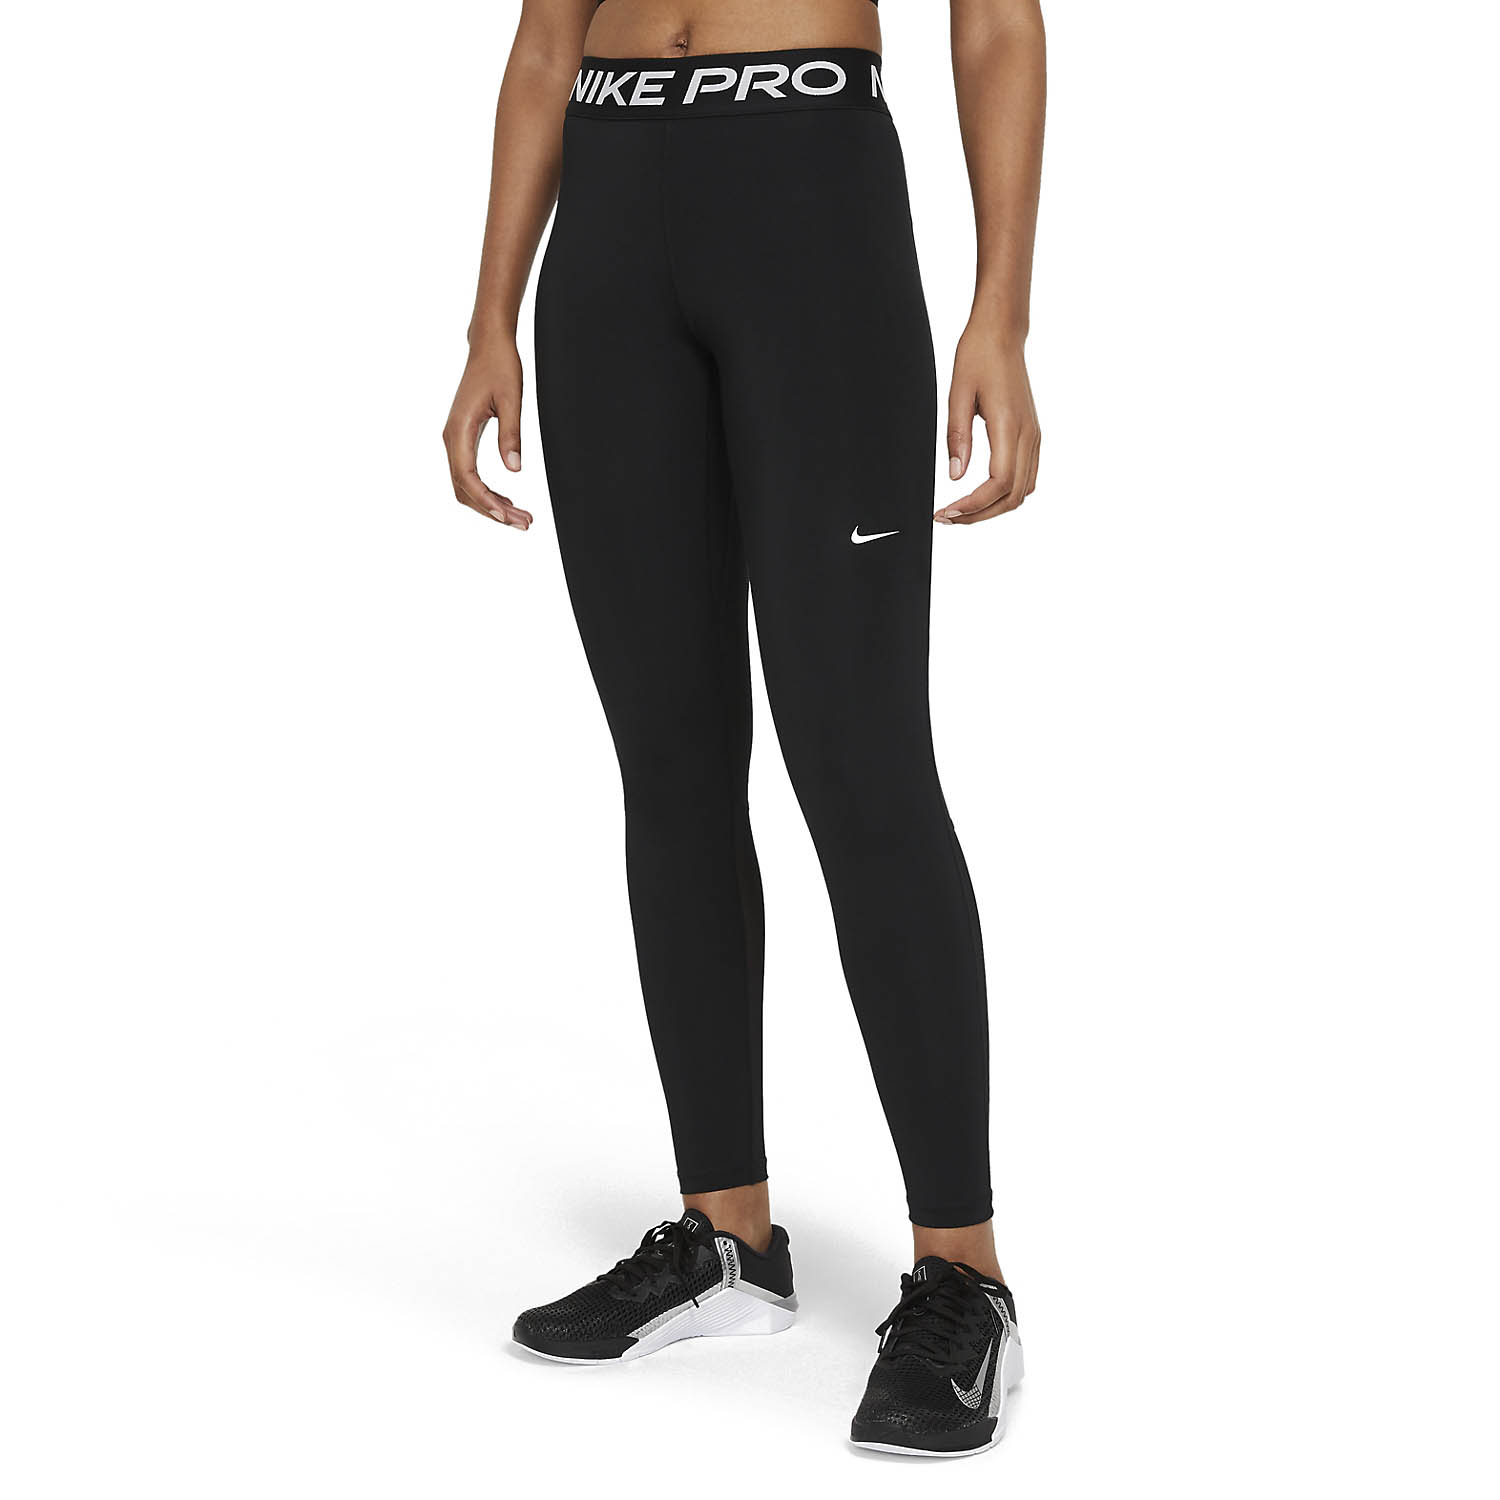 empieza la acción Meyella Extracto Nike Pro 365 Long Tights de Entrenamiento Mujer - Black/White